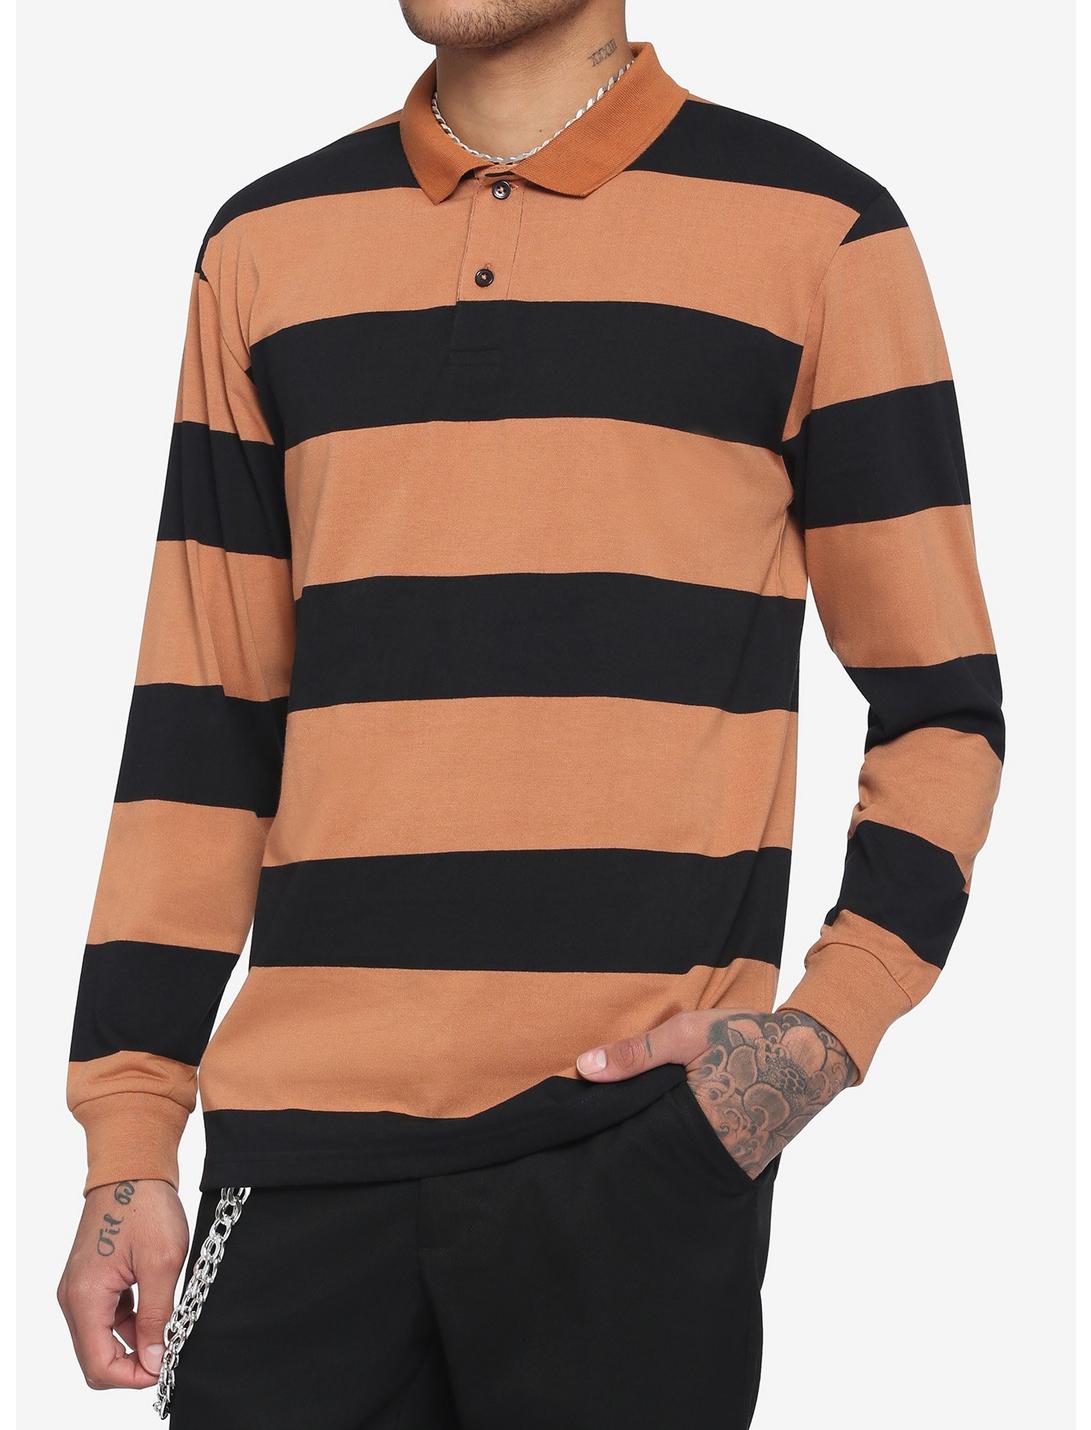 Black & Brown Wide Stripe Long-Sleeve Polo Shirt, STRIPE - TAN, hi-res